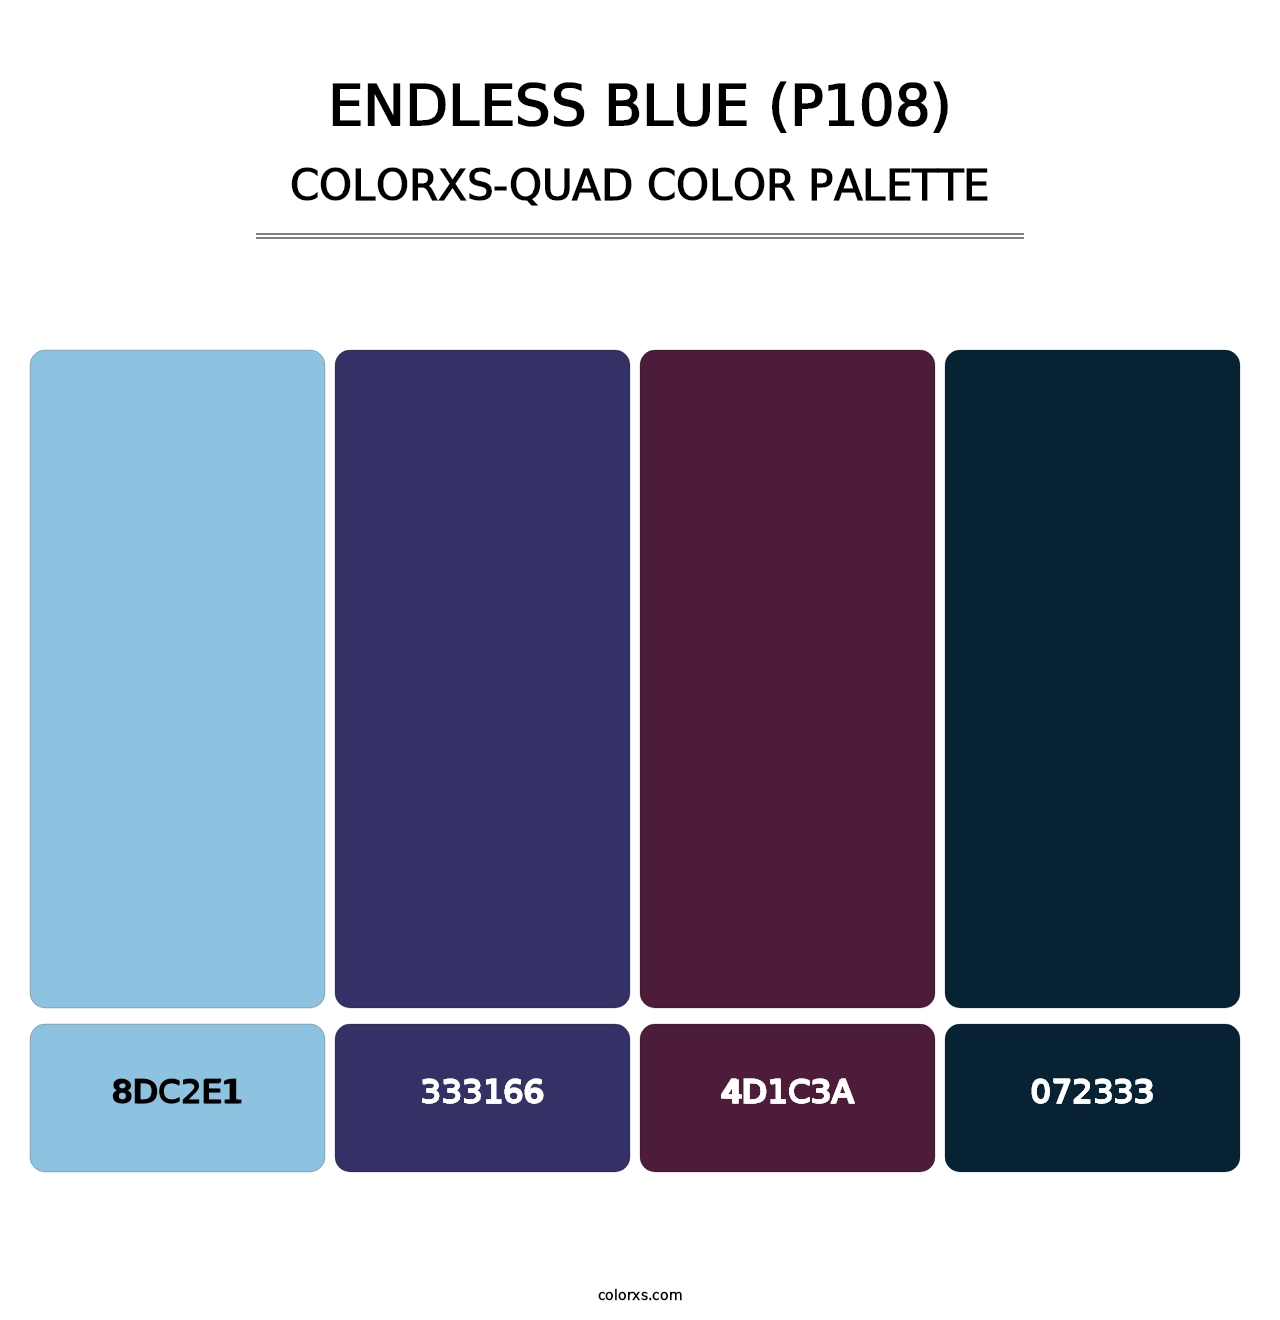 Endless Blue (P108) - Colorxs Quad Palette